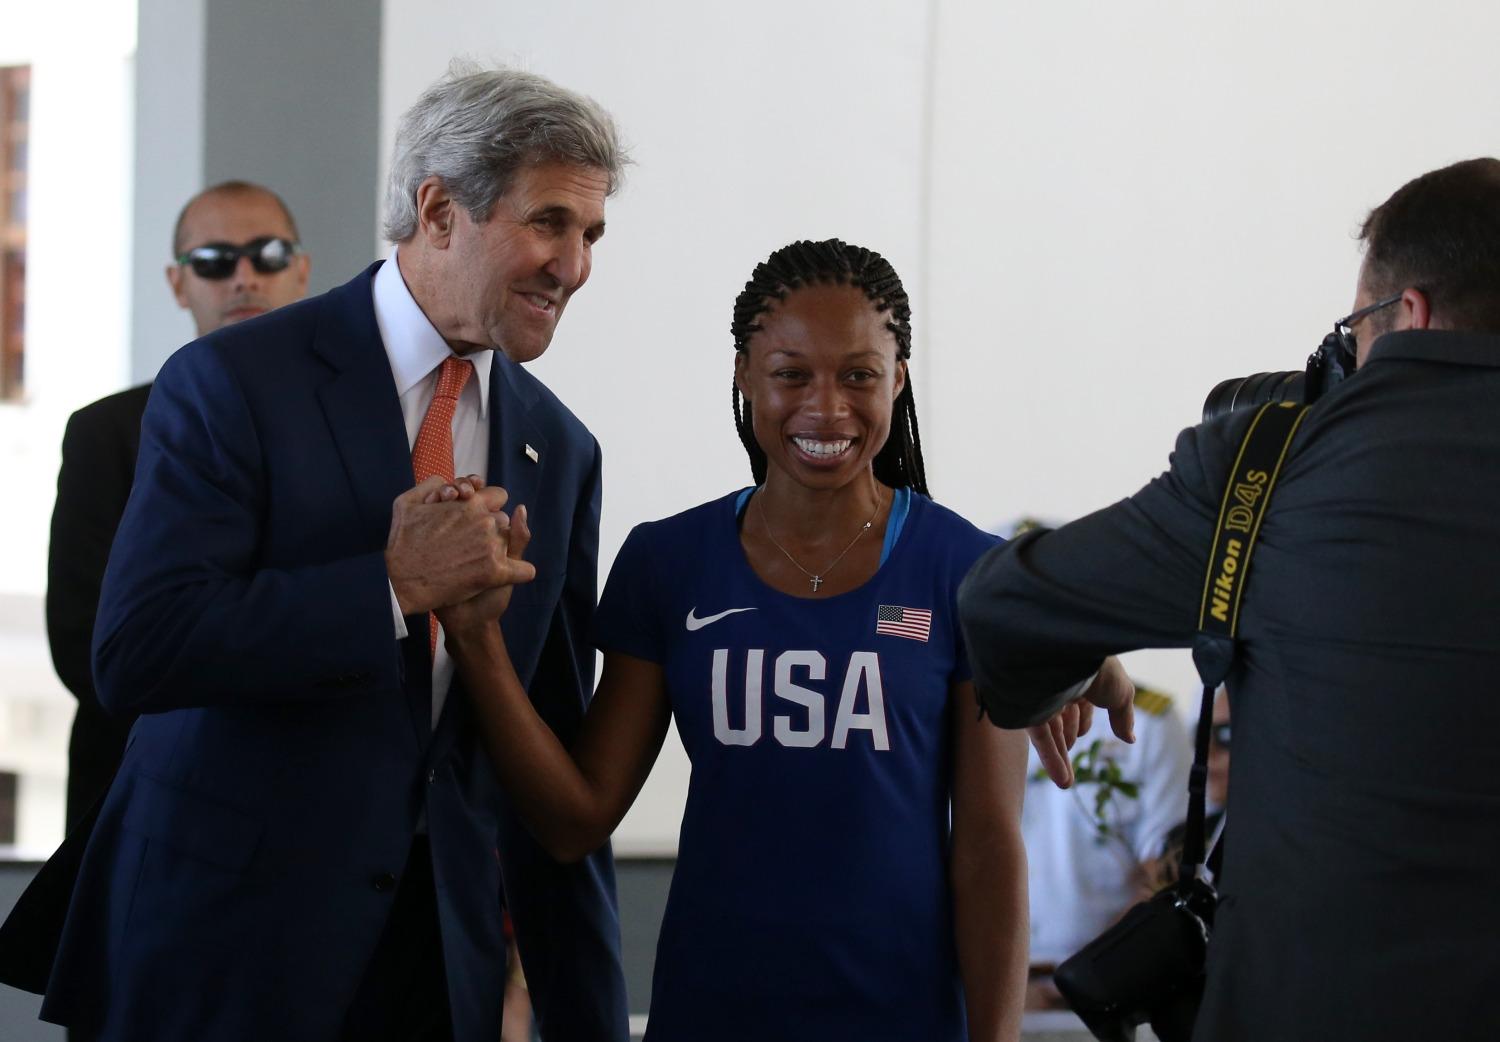 Az első fecskék: John Kerry amerikai külügyminiszter pózol Allyson Felix olimpikonnal Rióban